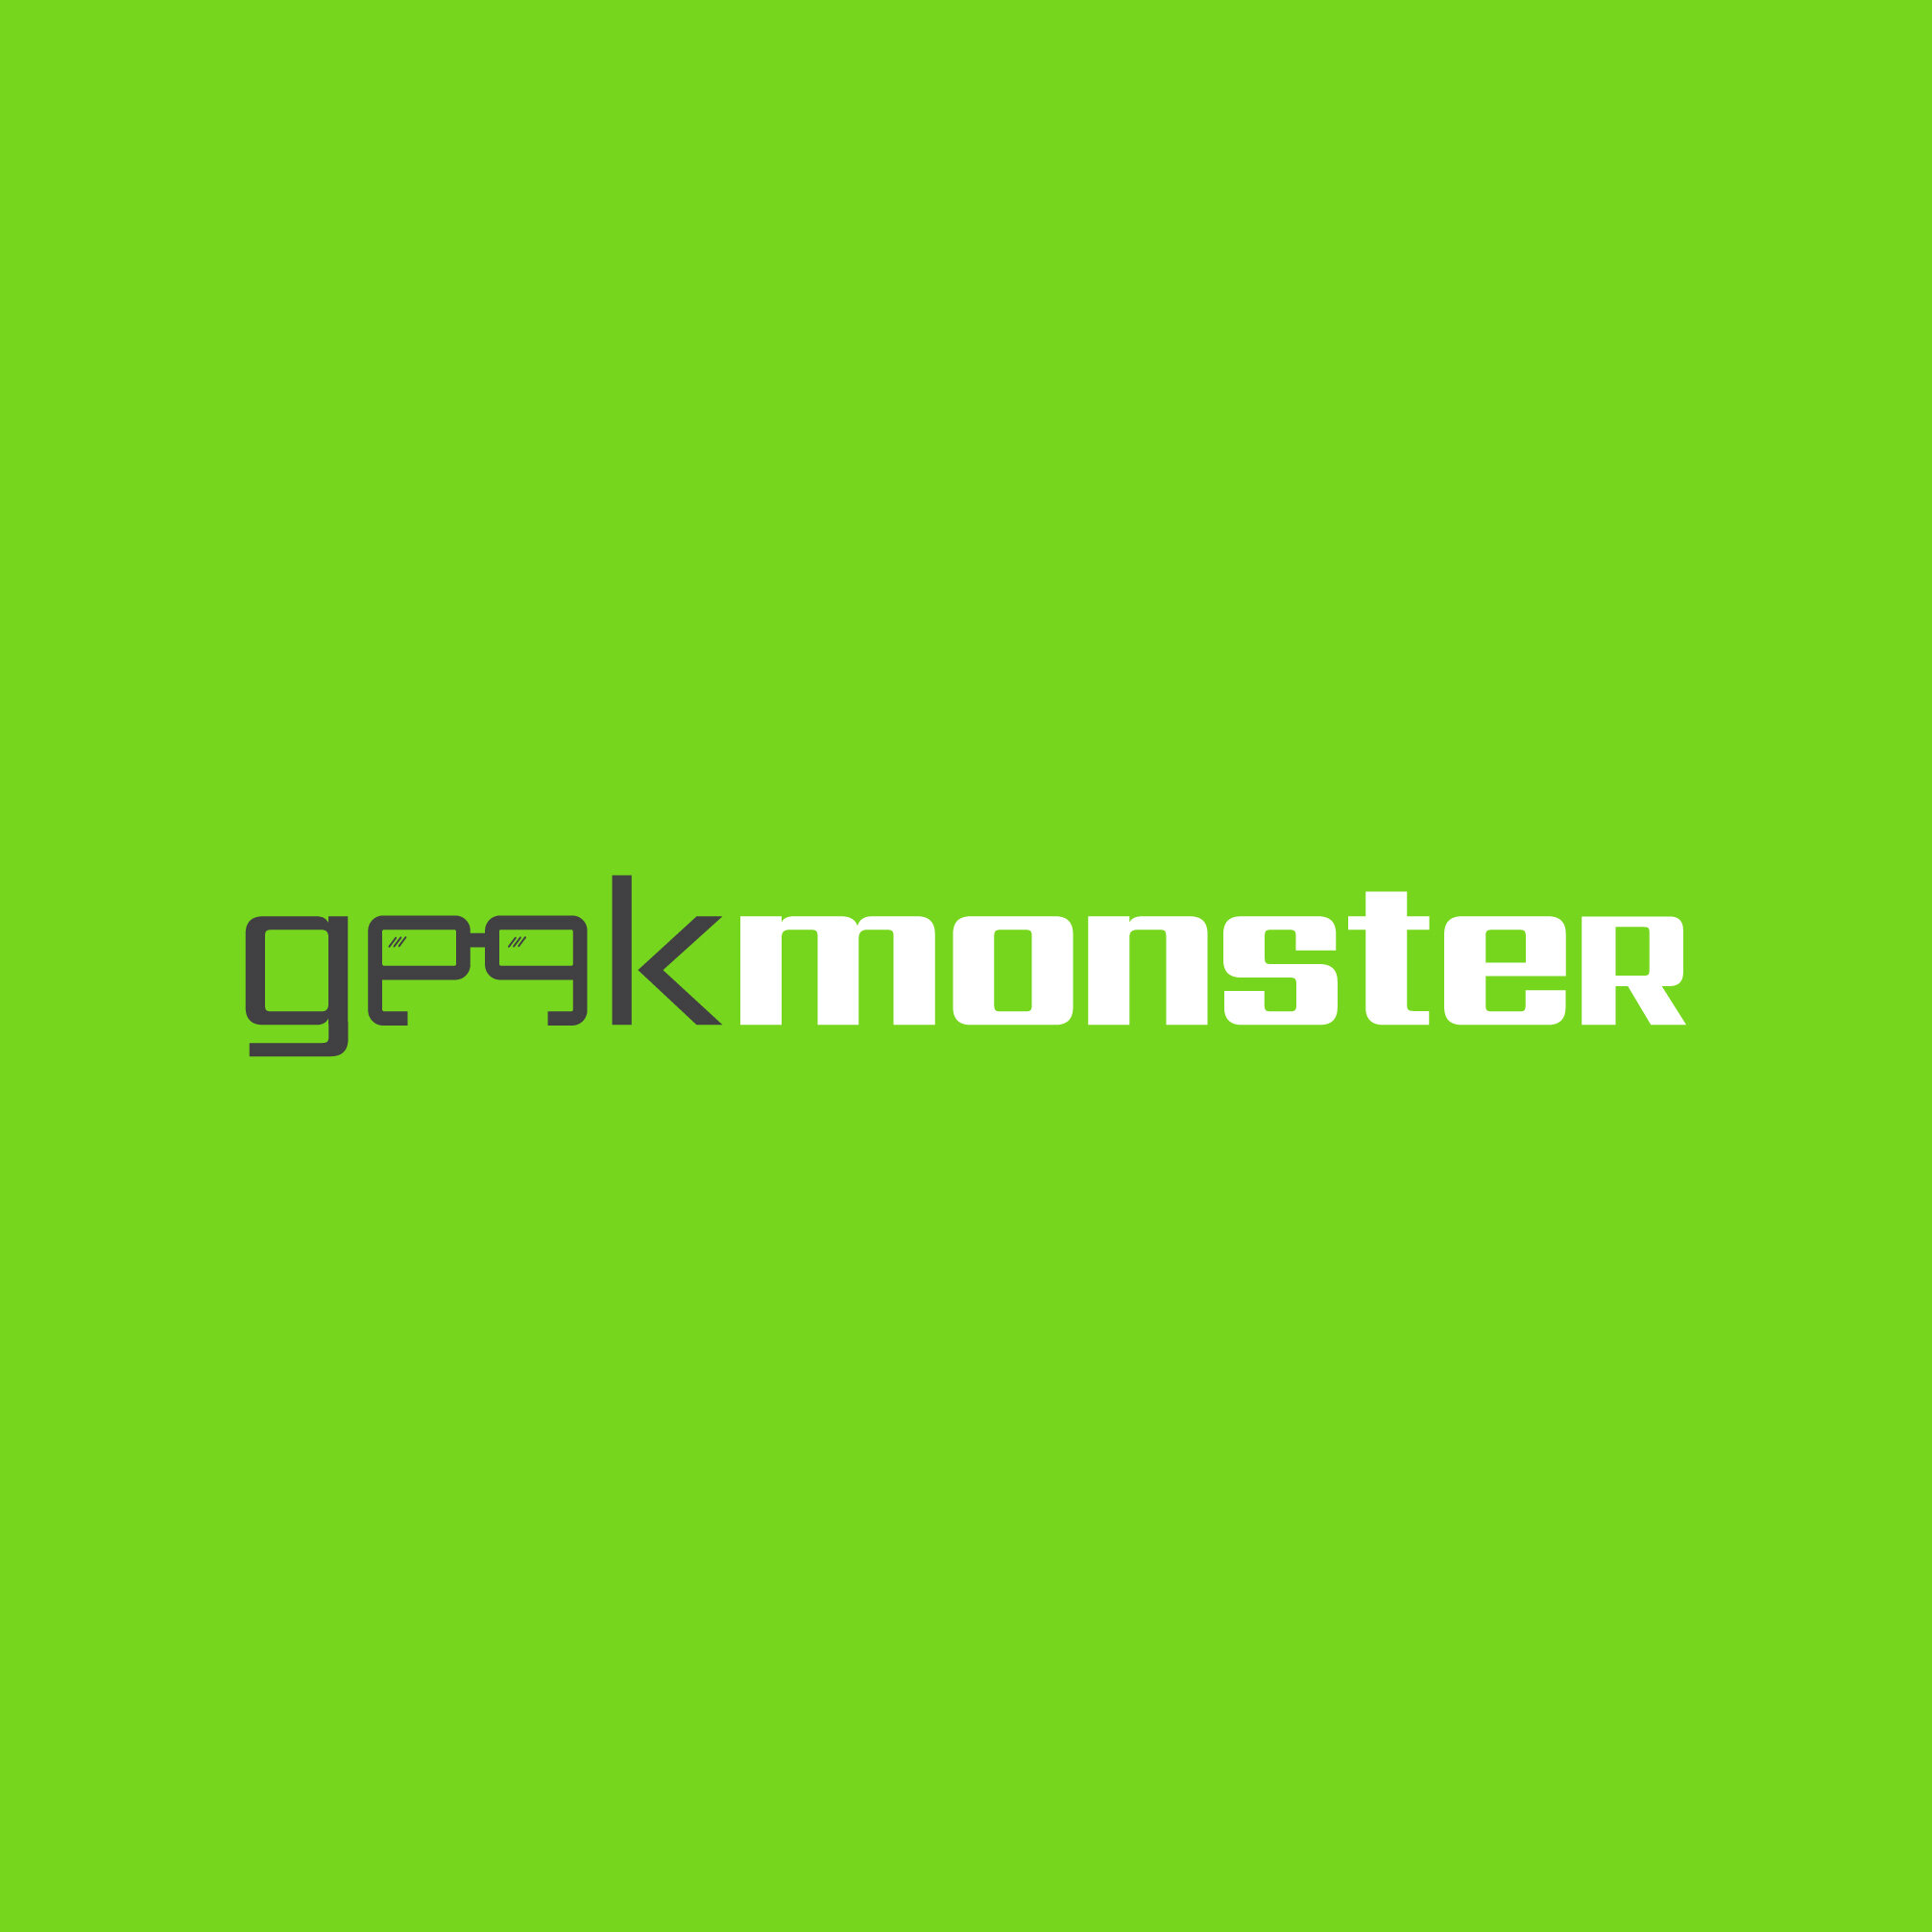 GeekMonster_Logo_FINAL_logo-fullcolor_logo-fullcolor.jpg